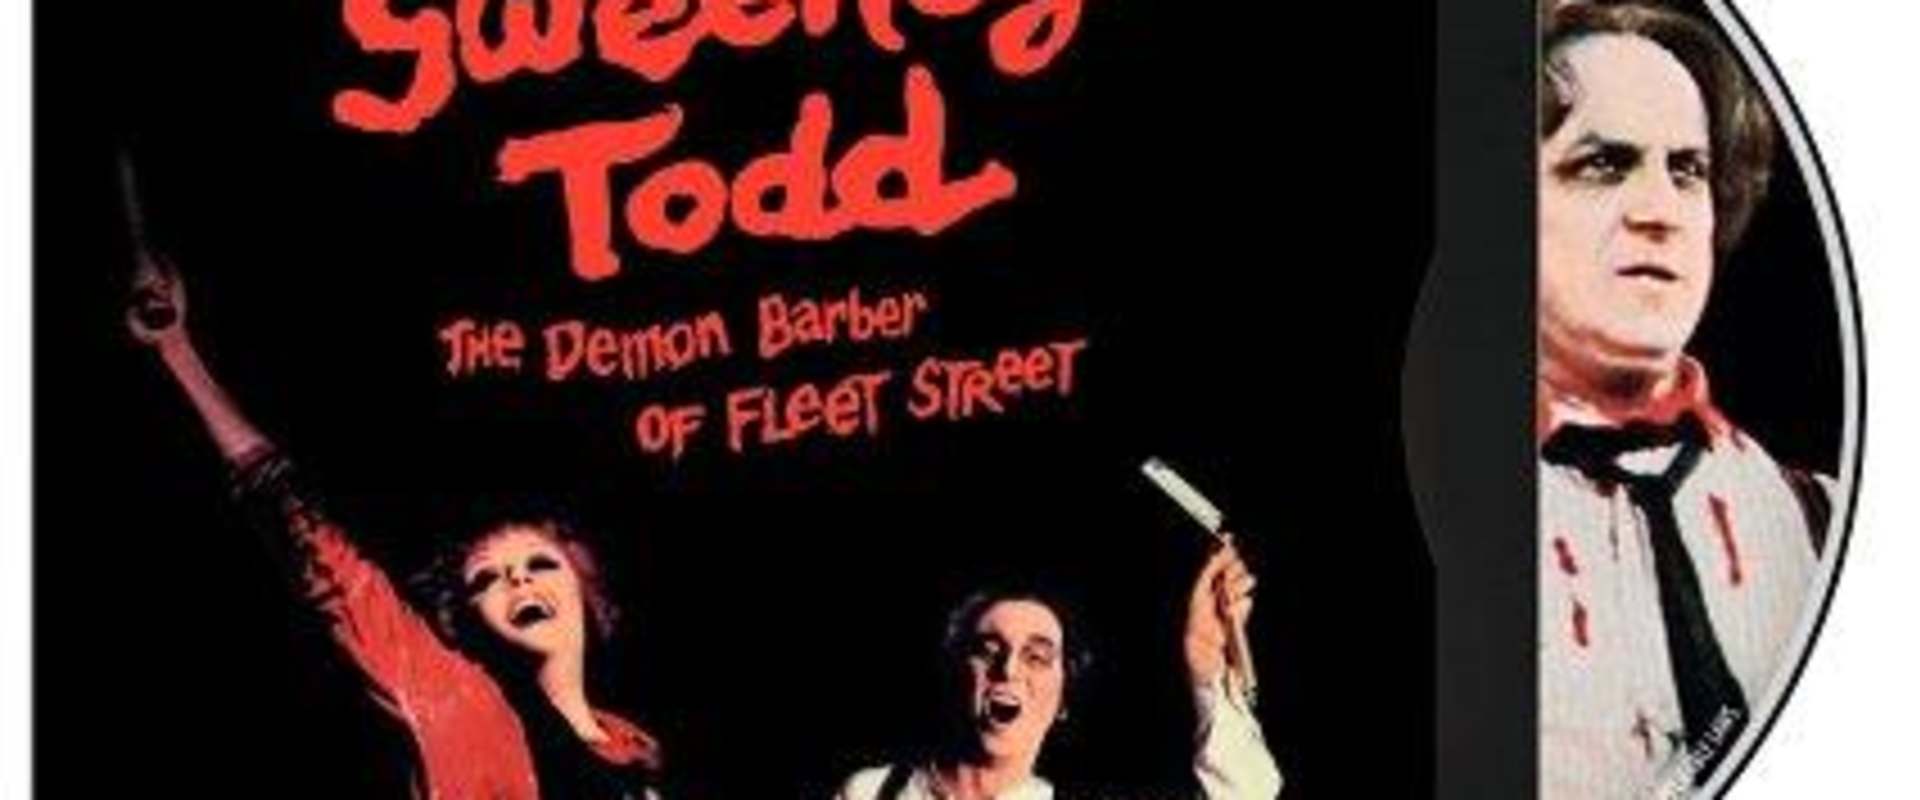 Sweeney Todd: The Demon Barber of Fleet Street background 1